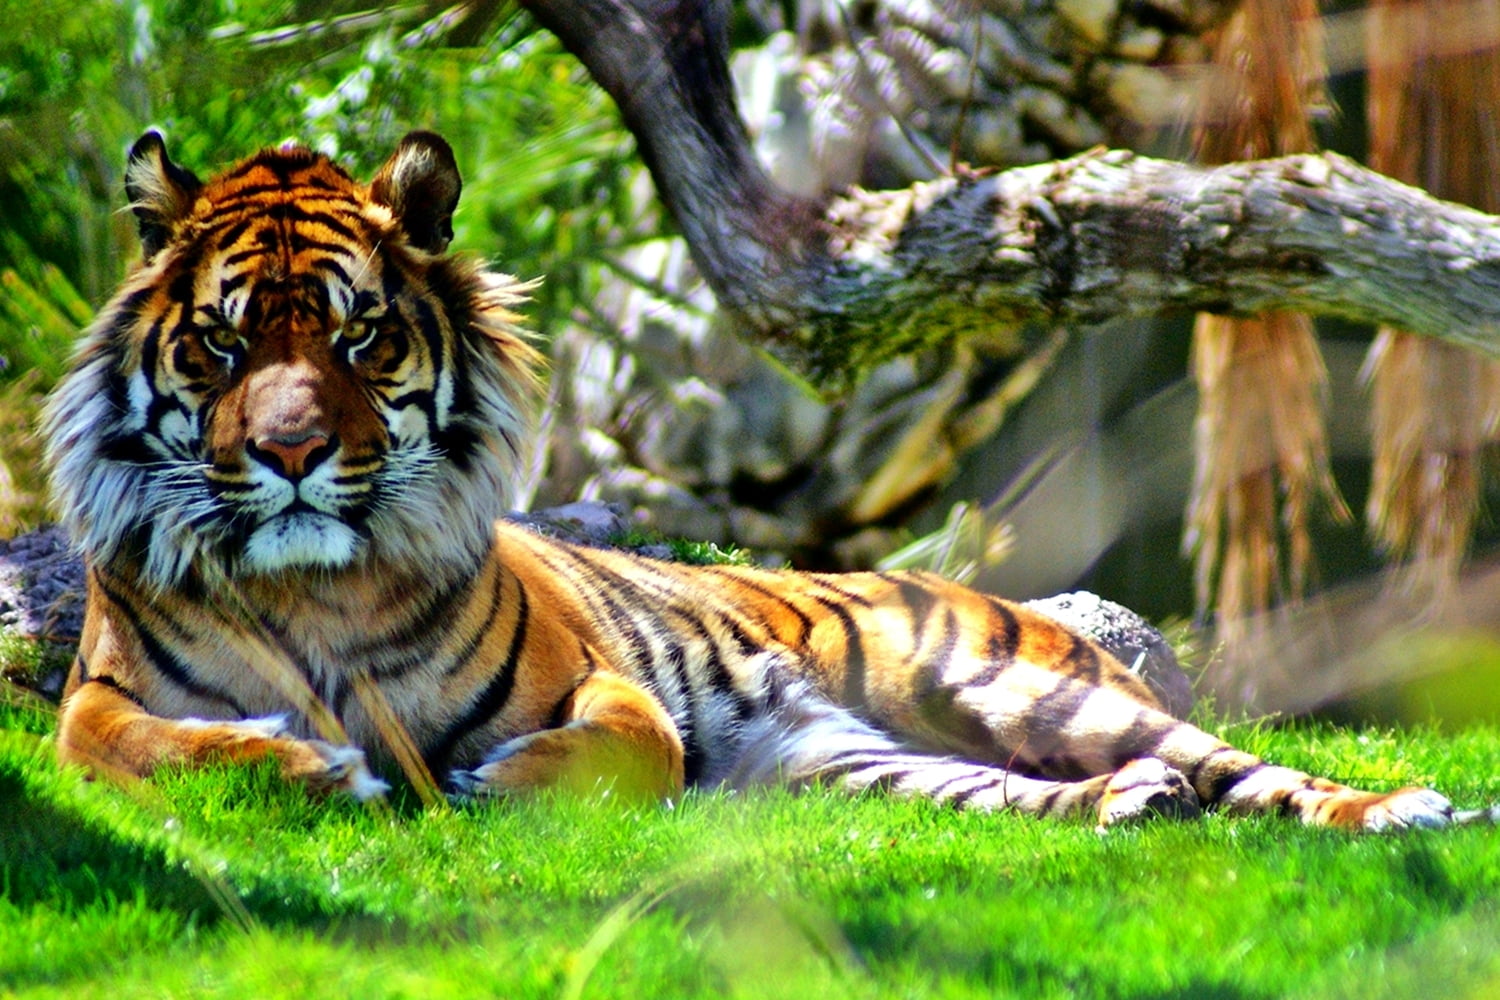 tiger lying on grass field, sumatran tiger, panthera tigris sumatrae